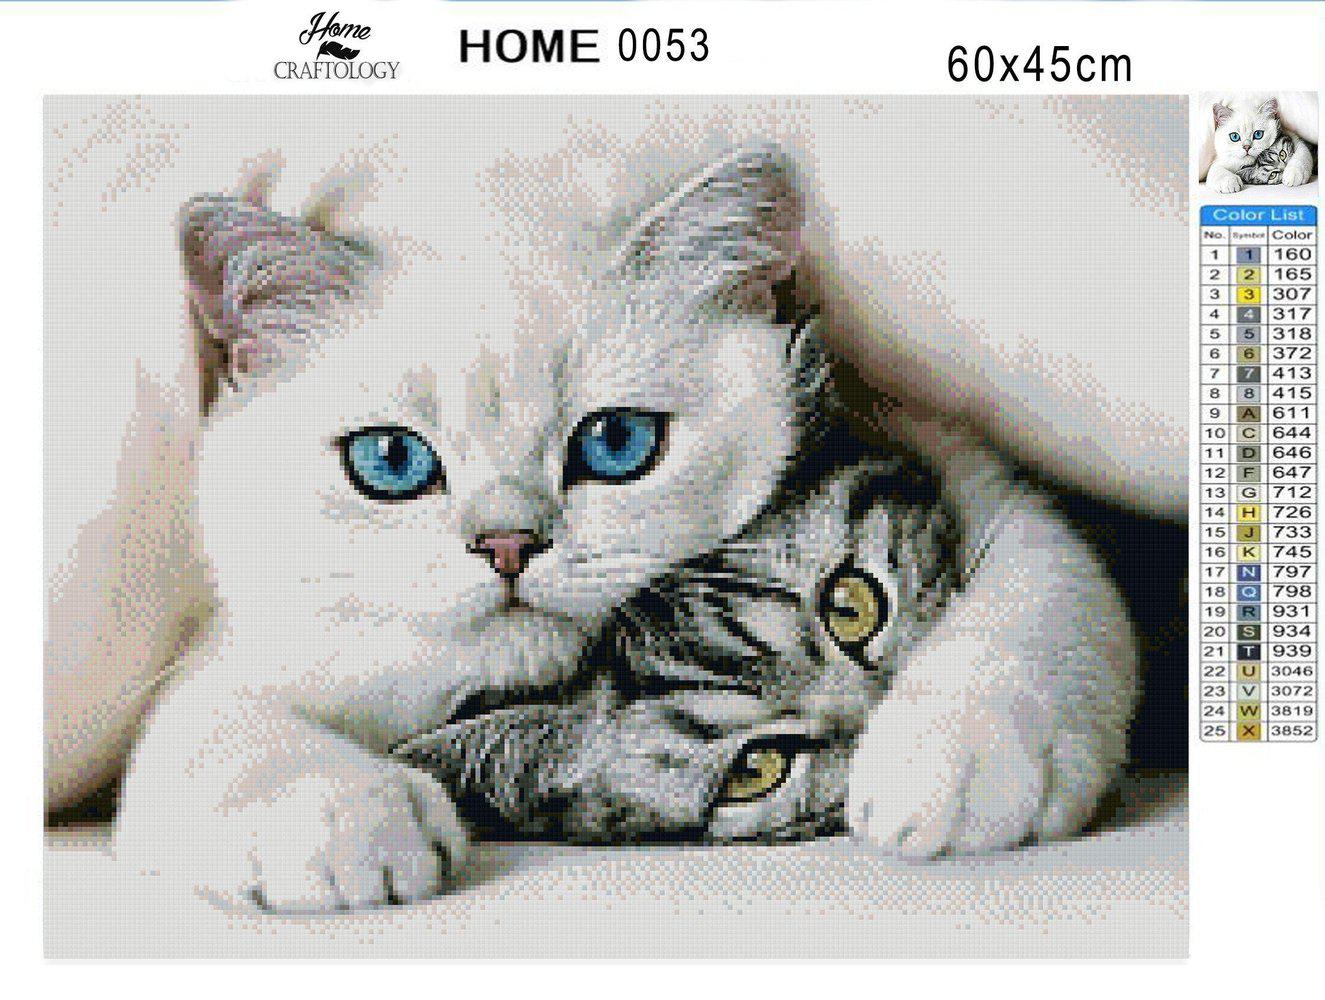 Cats Bundle - Premium Diamond Painting Kit